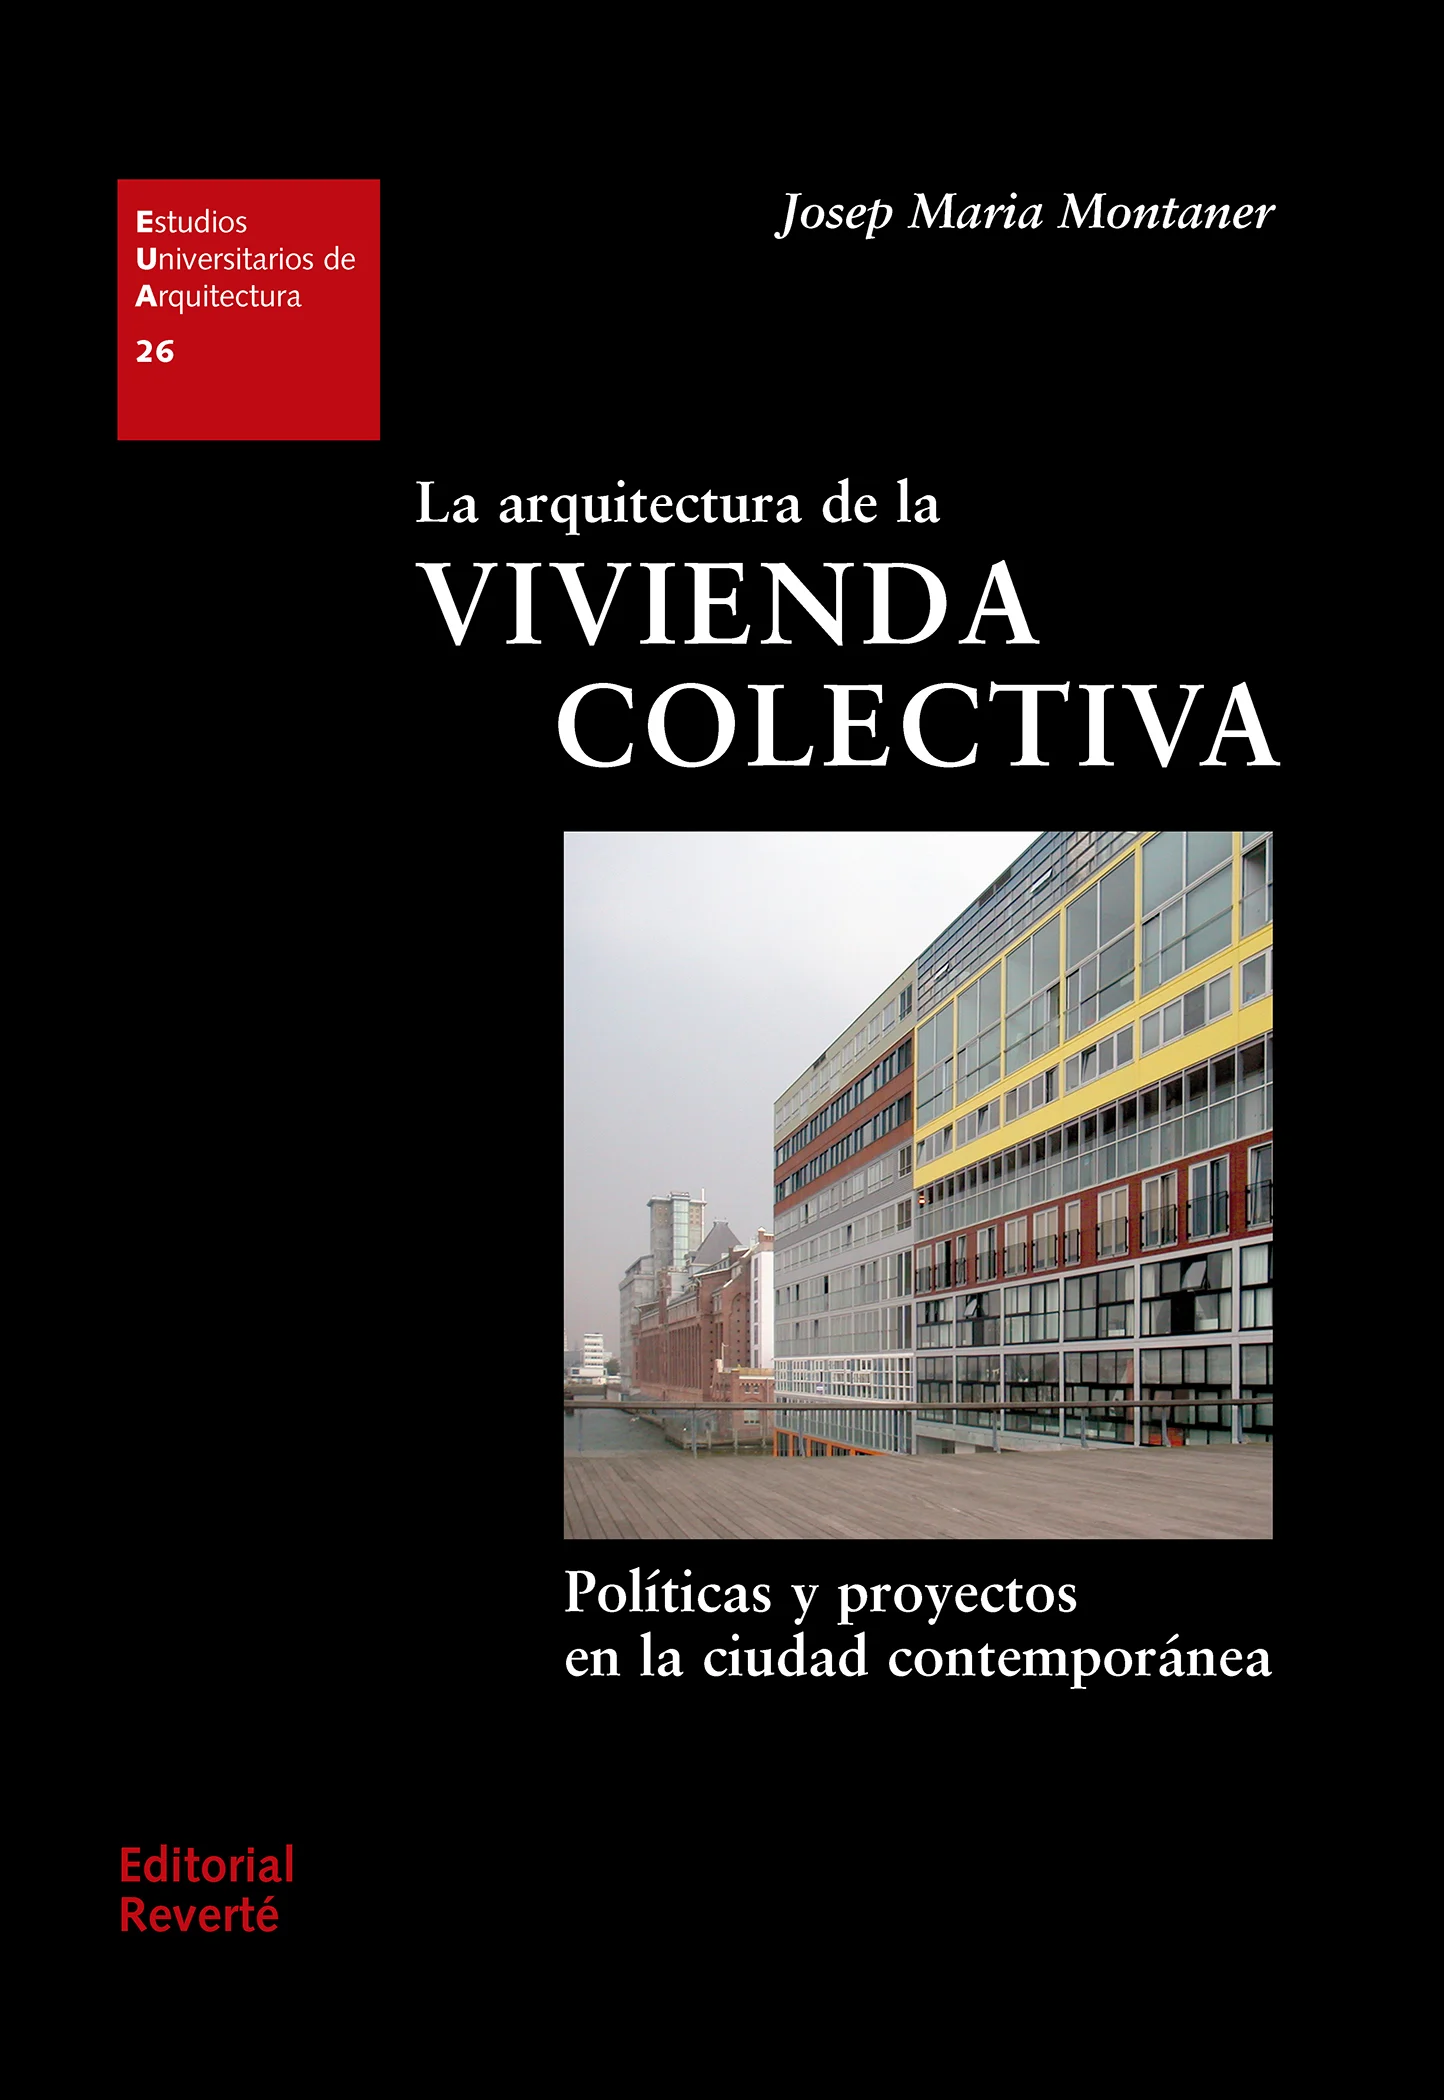 La arquitectura de la vivienda colectiva. Políticas y proyectos 
en la ciudad contemporánea